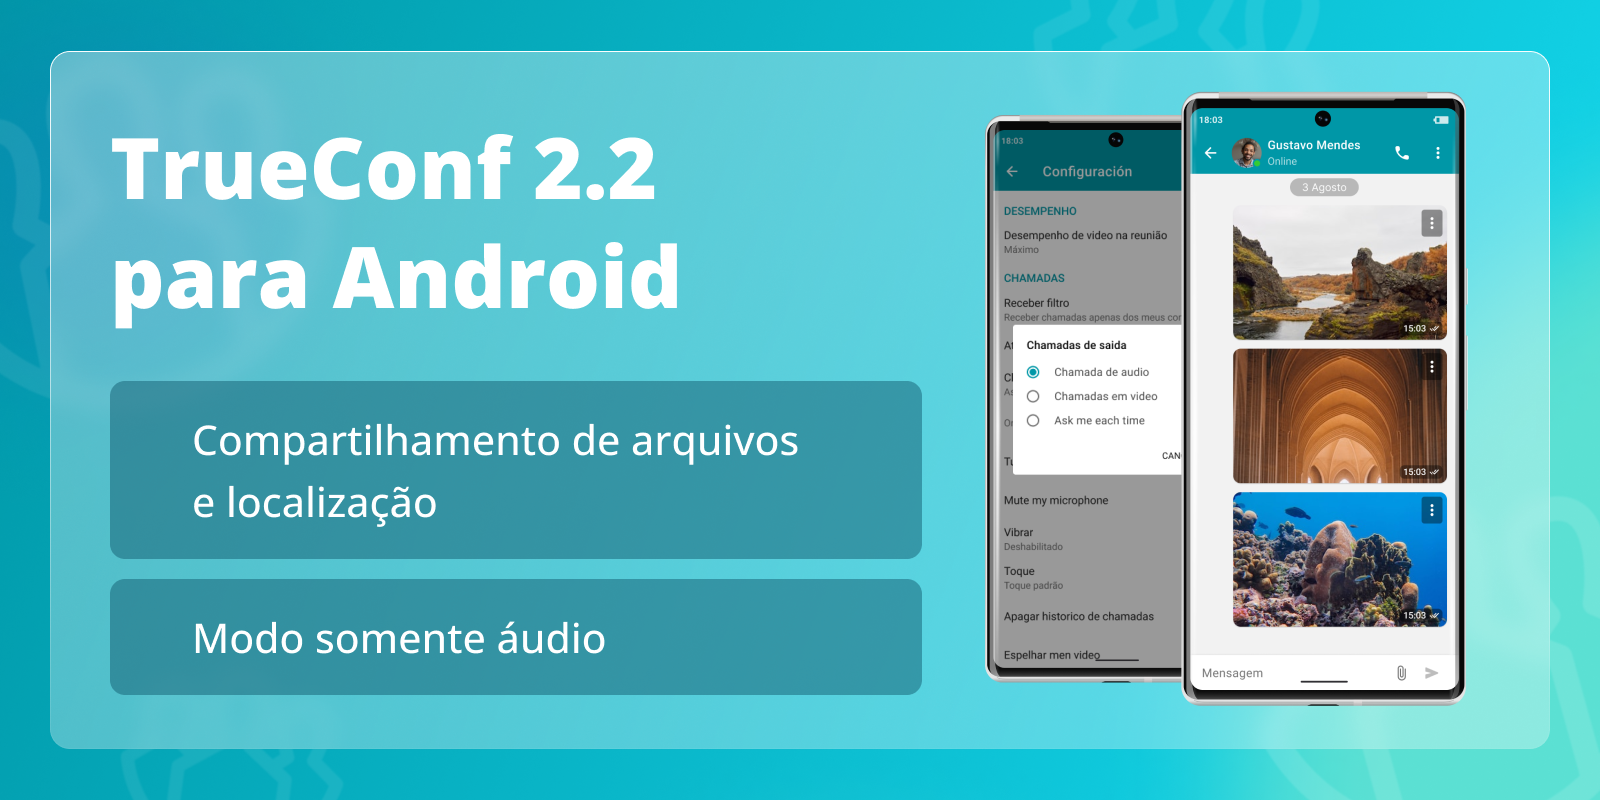 TrueConf 2.2 para Android: modo somente áudio e compartilhamento de arquivos 9